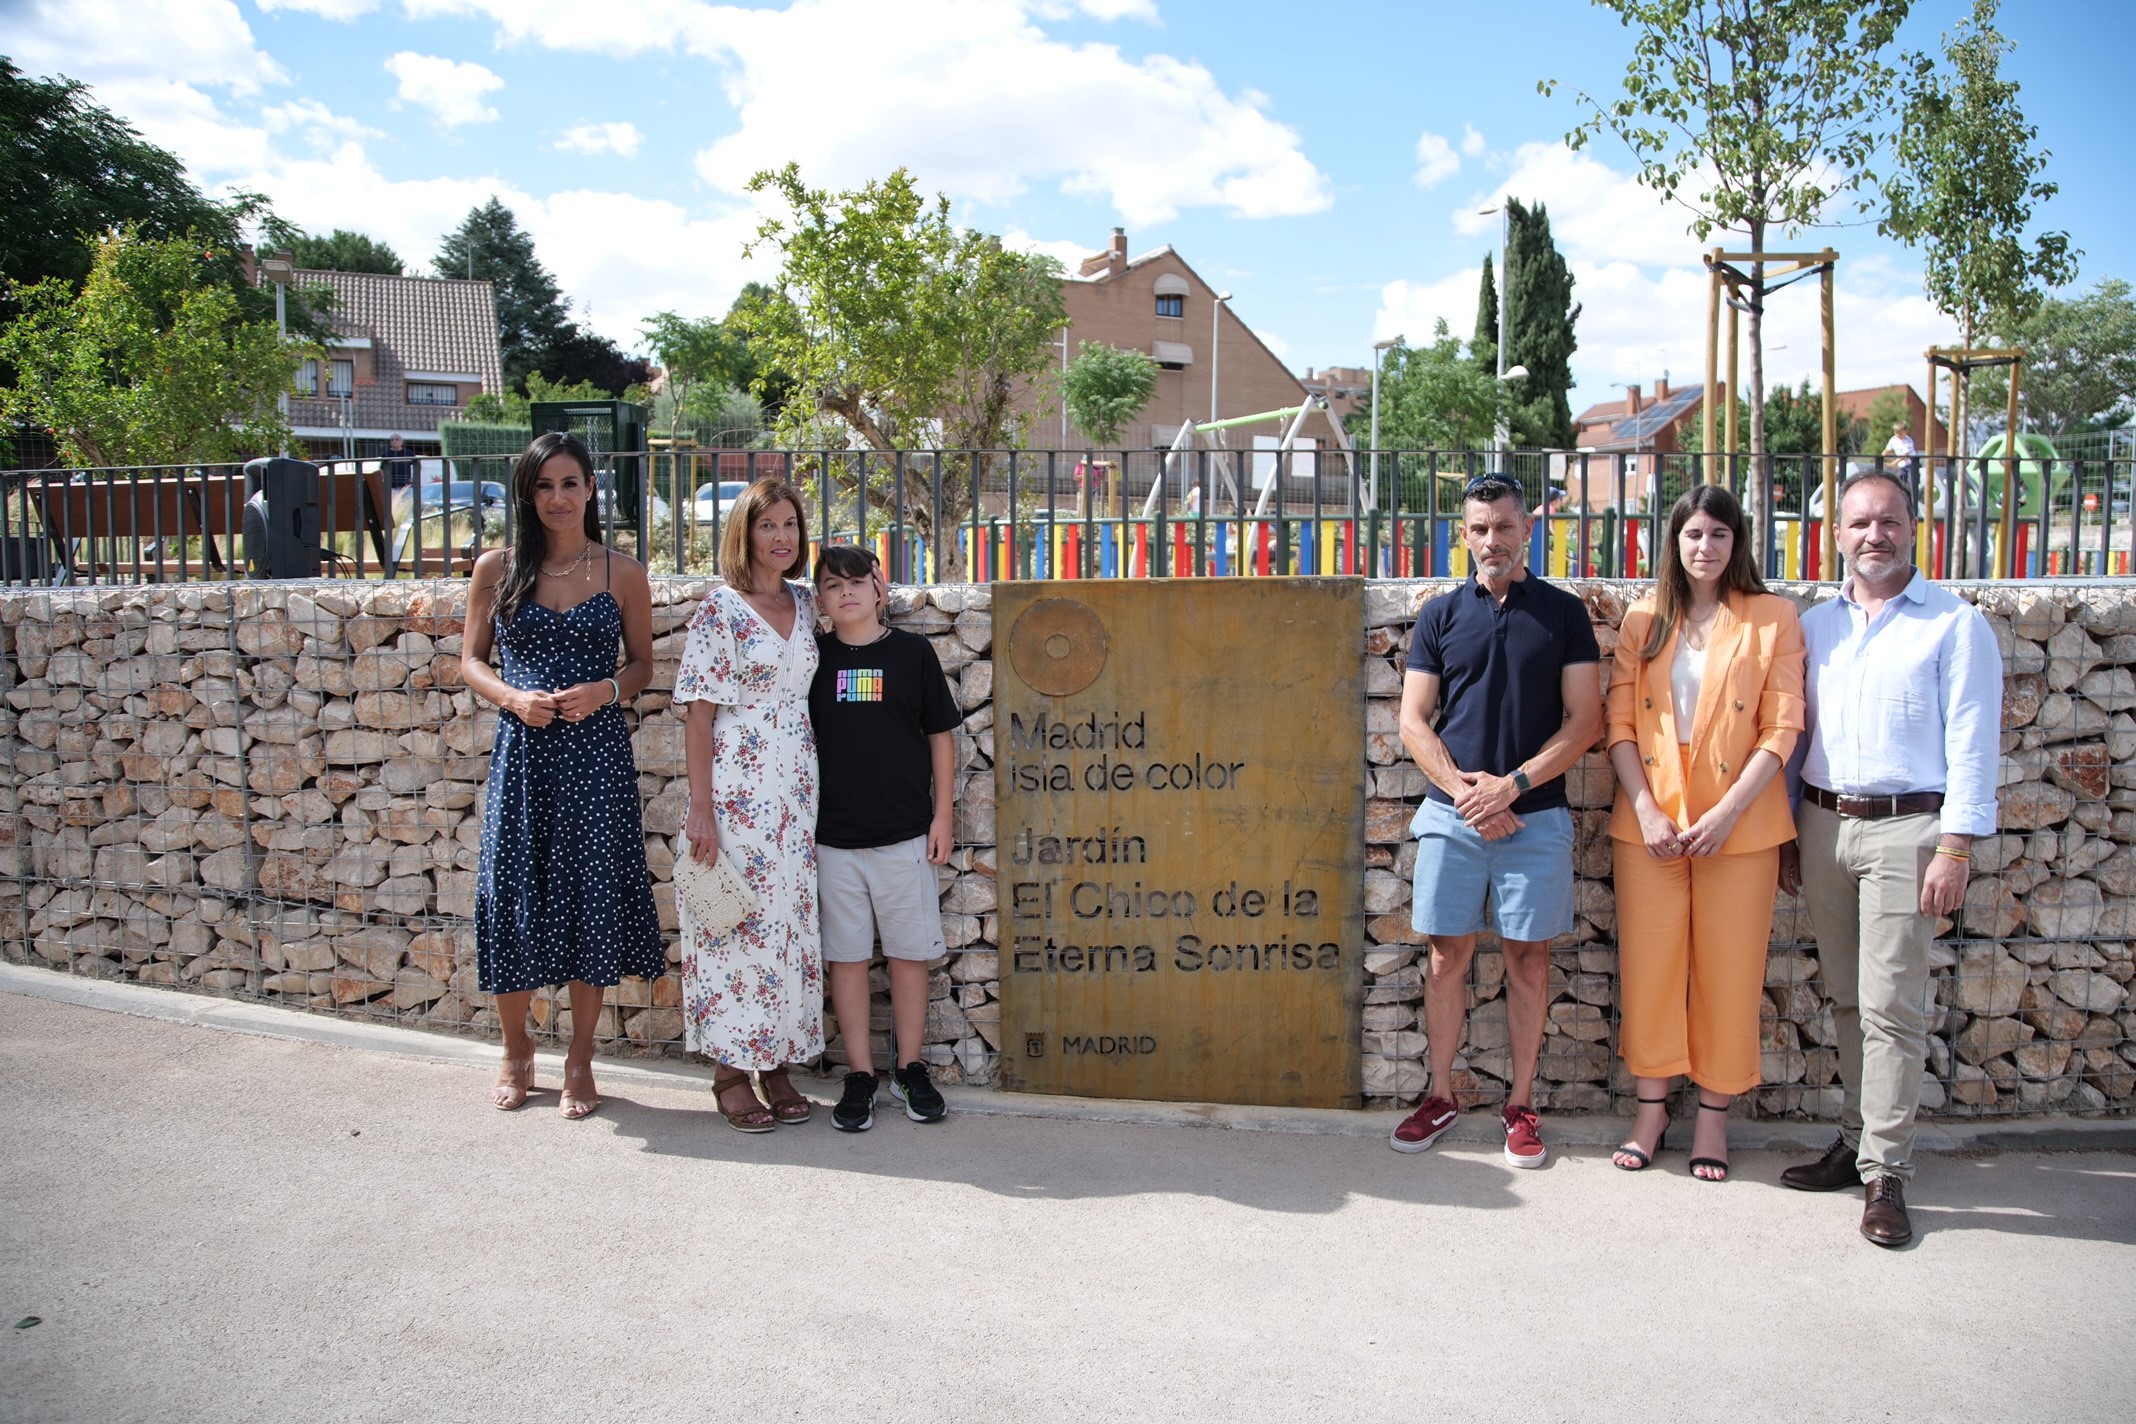 Villacís, Fuentes y Miranda en la inauguración del jardín del Chico de la eterna sonrisa en Barajas